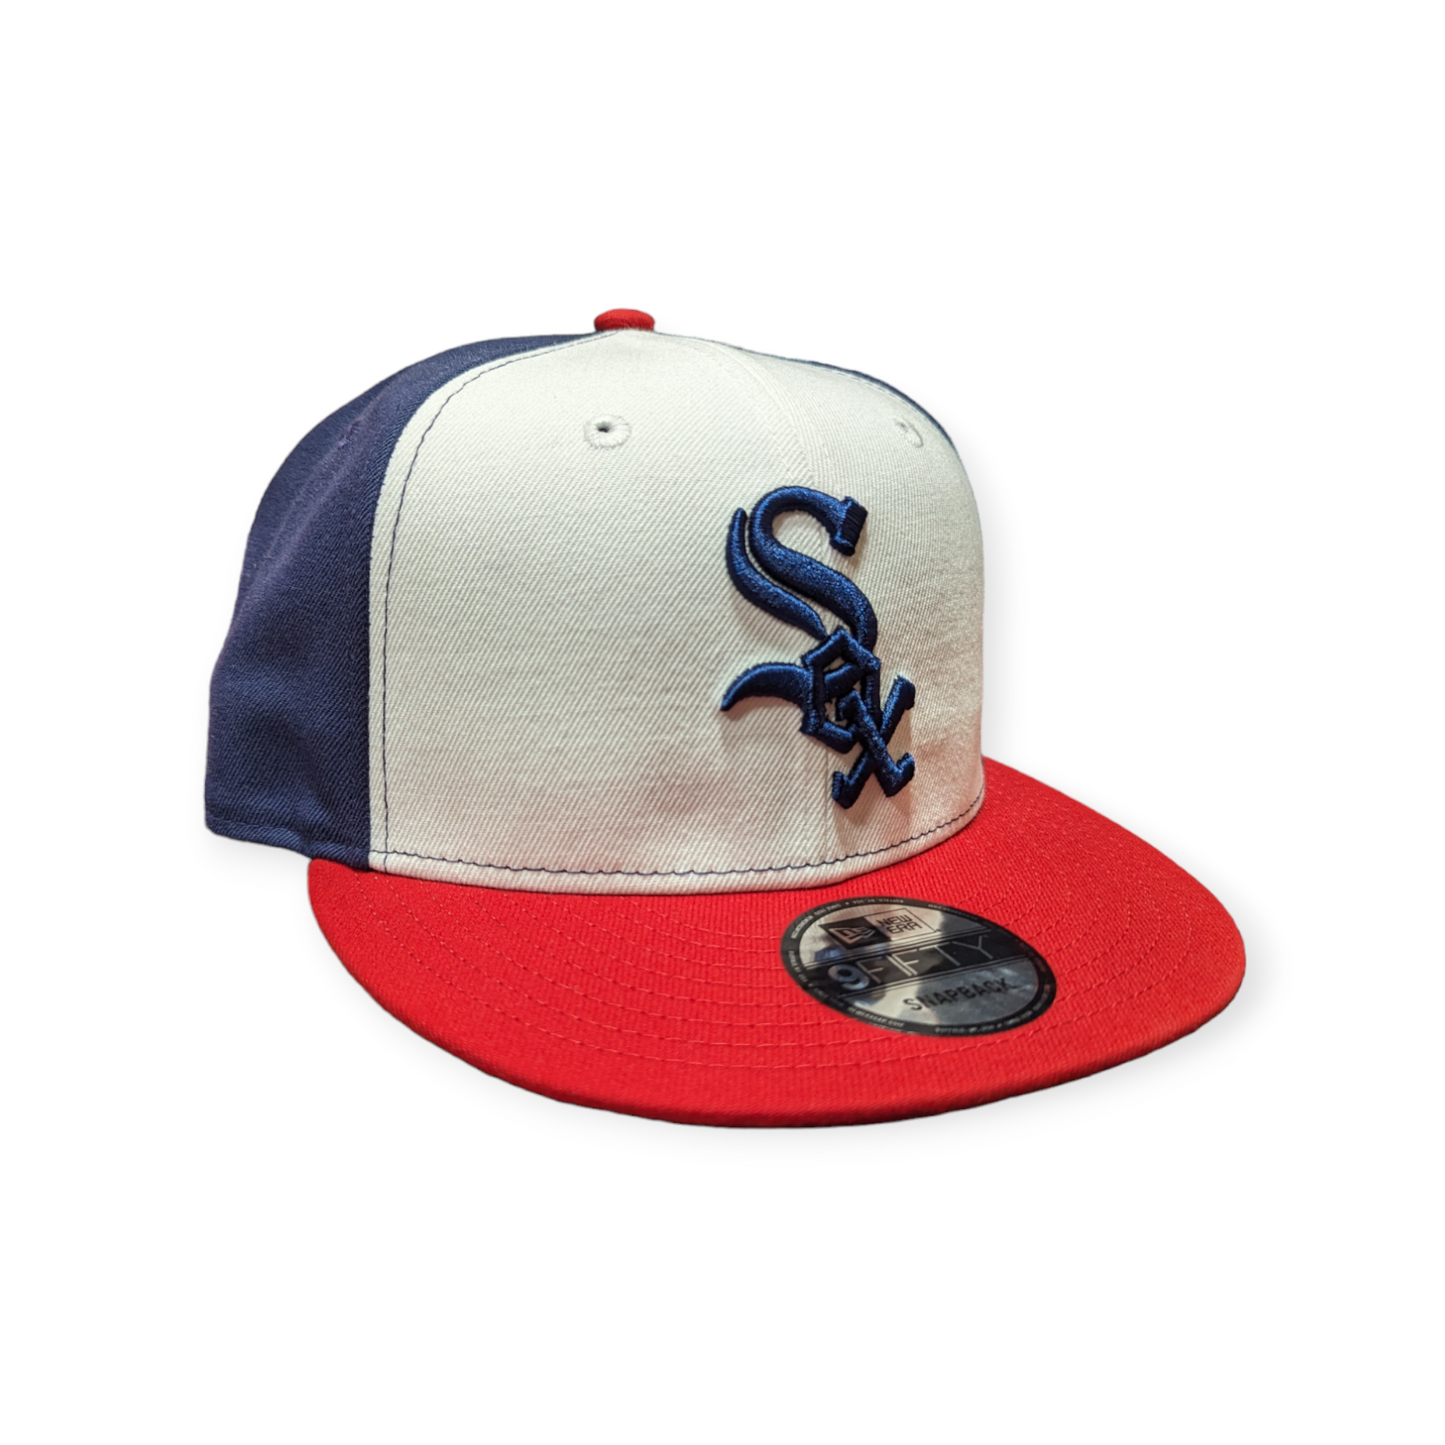 Chicago White Sox New Era Navy Red White Mashup 9FIFTY Snapback Hat